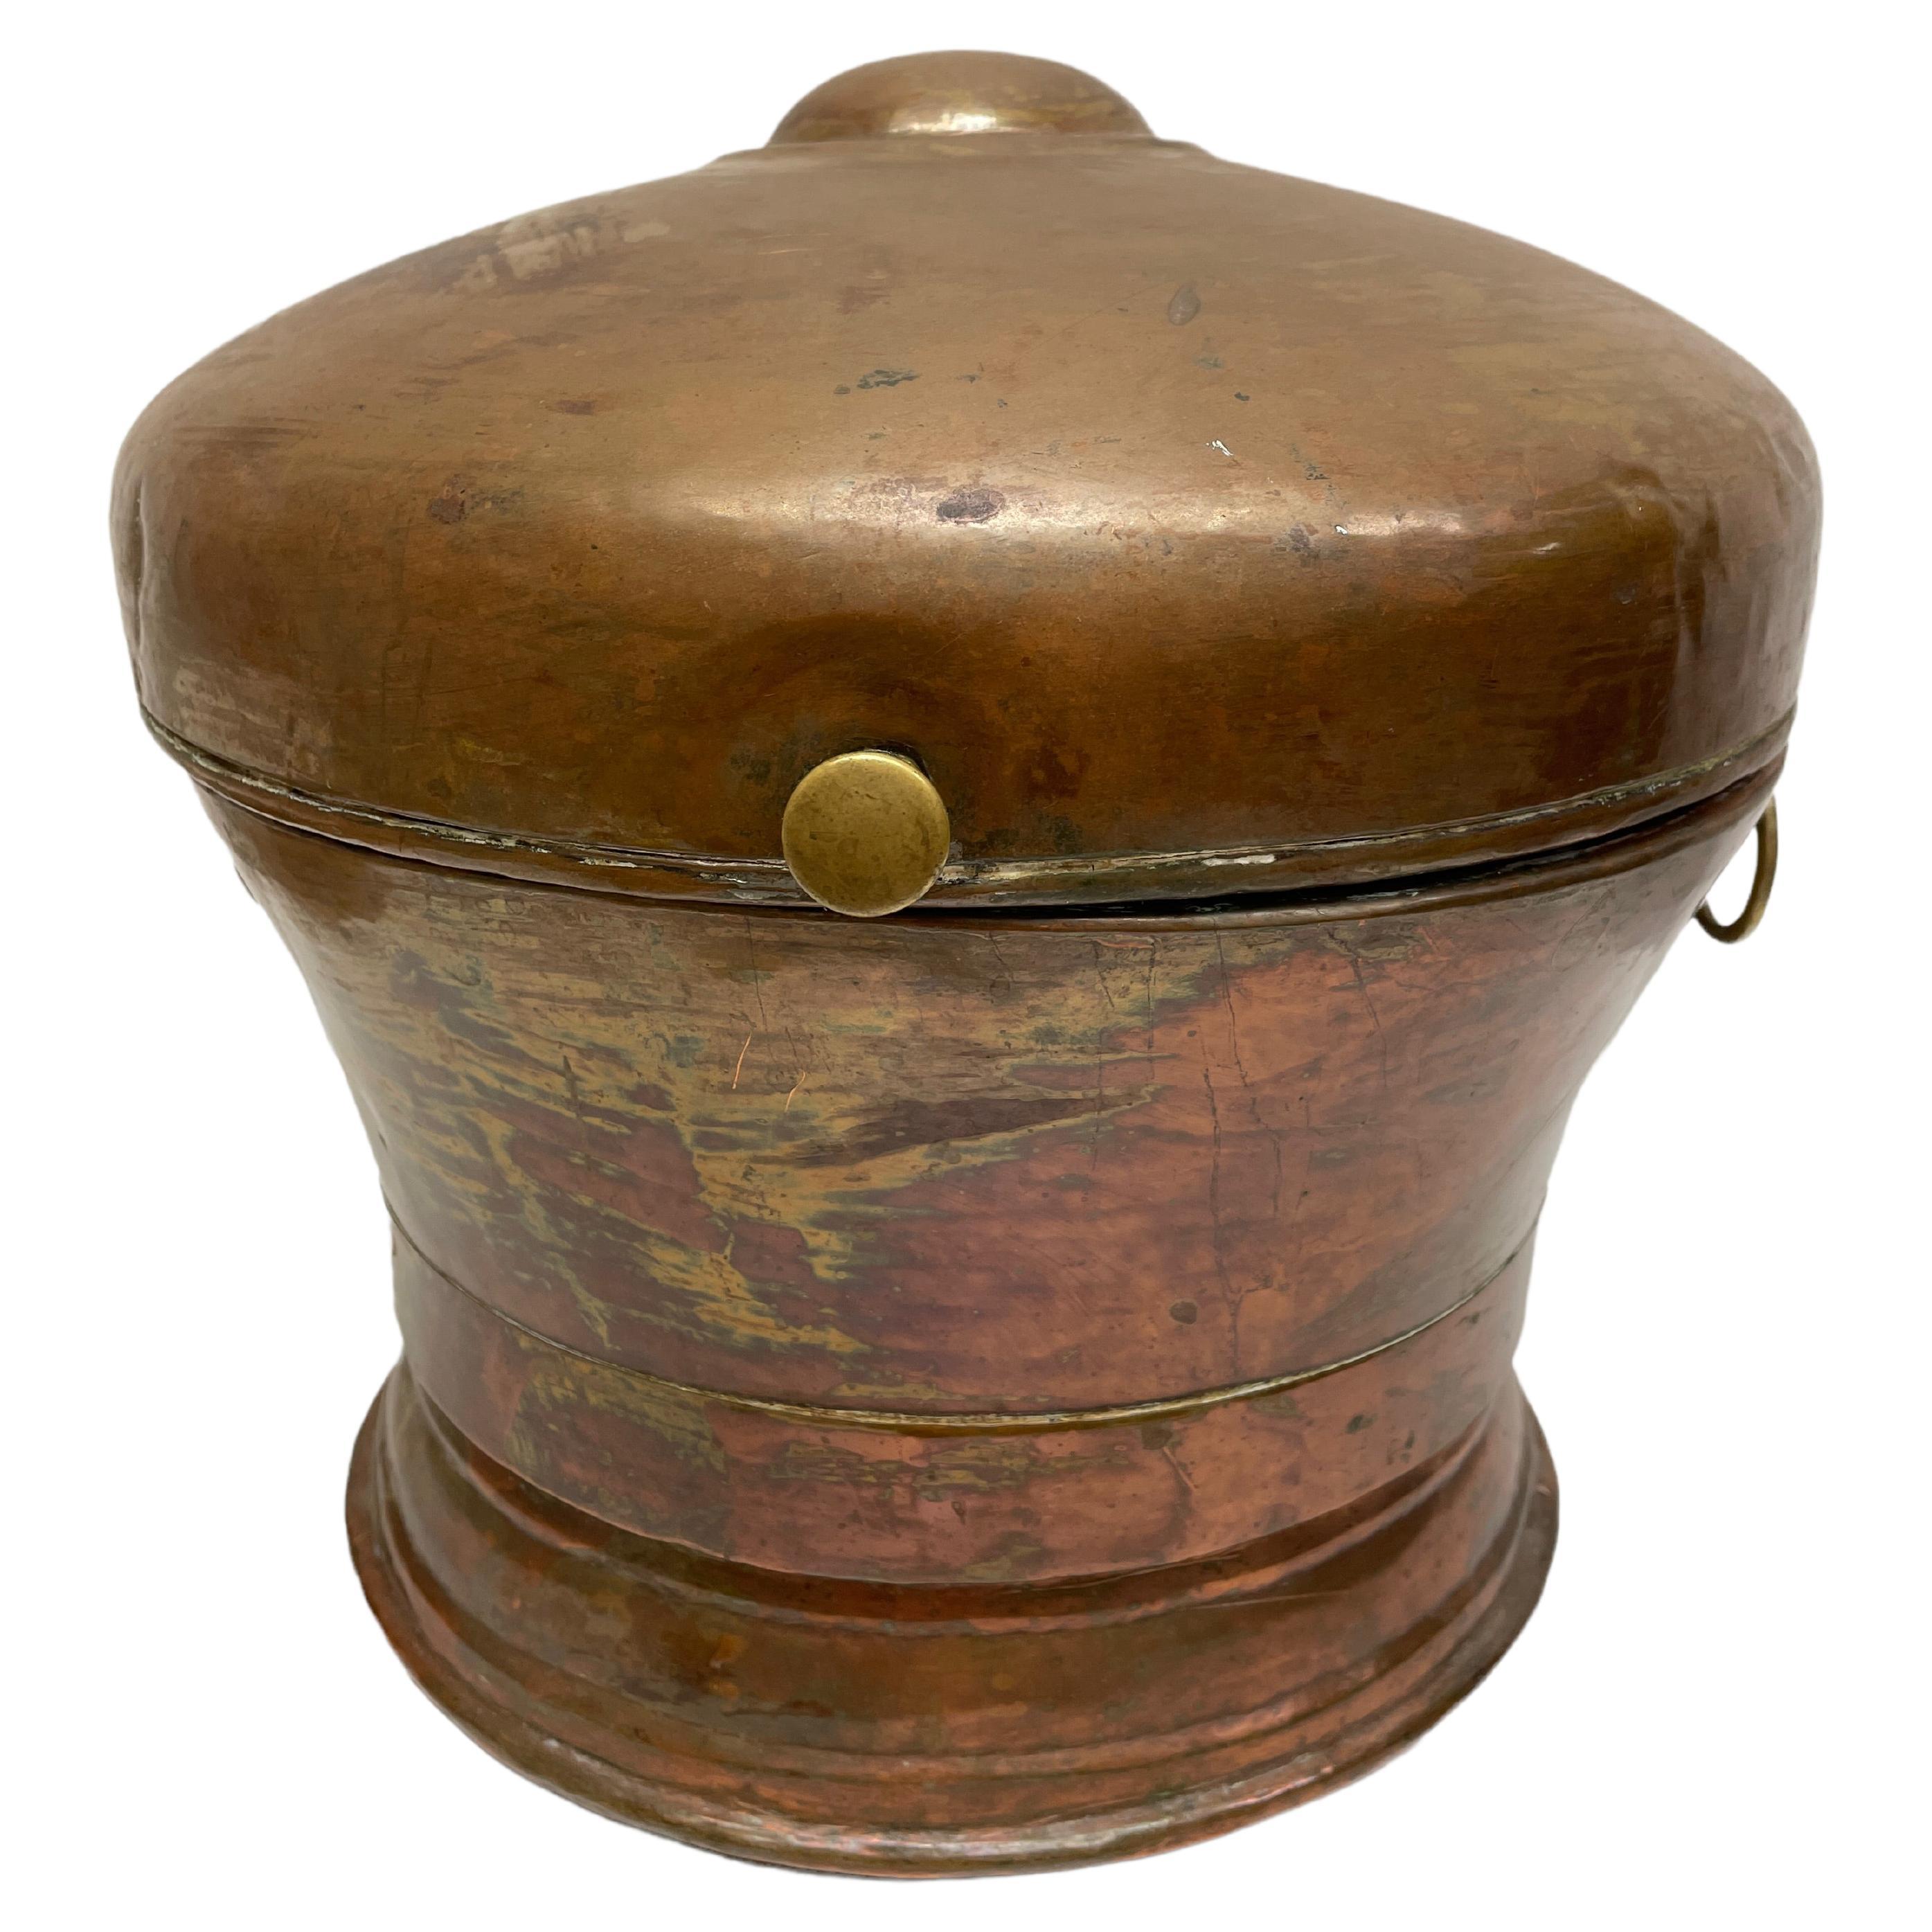 Boîte à pain allemande du 18ème siècle en cuivre et laiton martelé, outil de cuisine